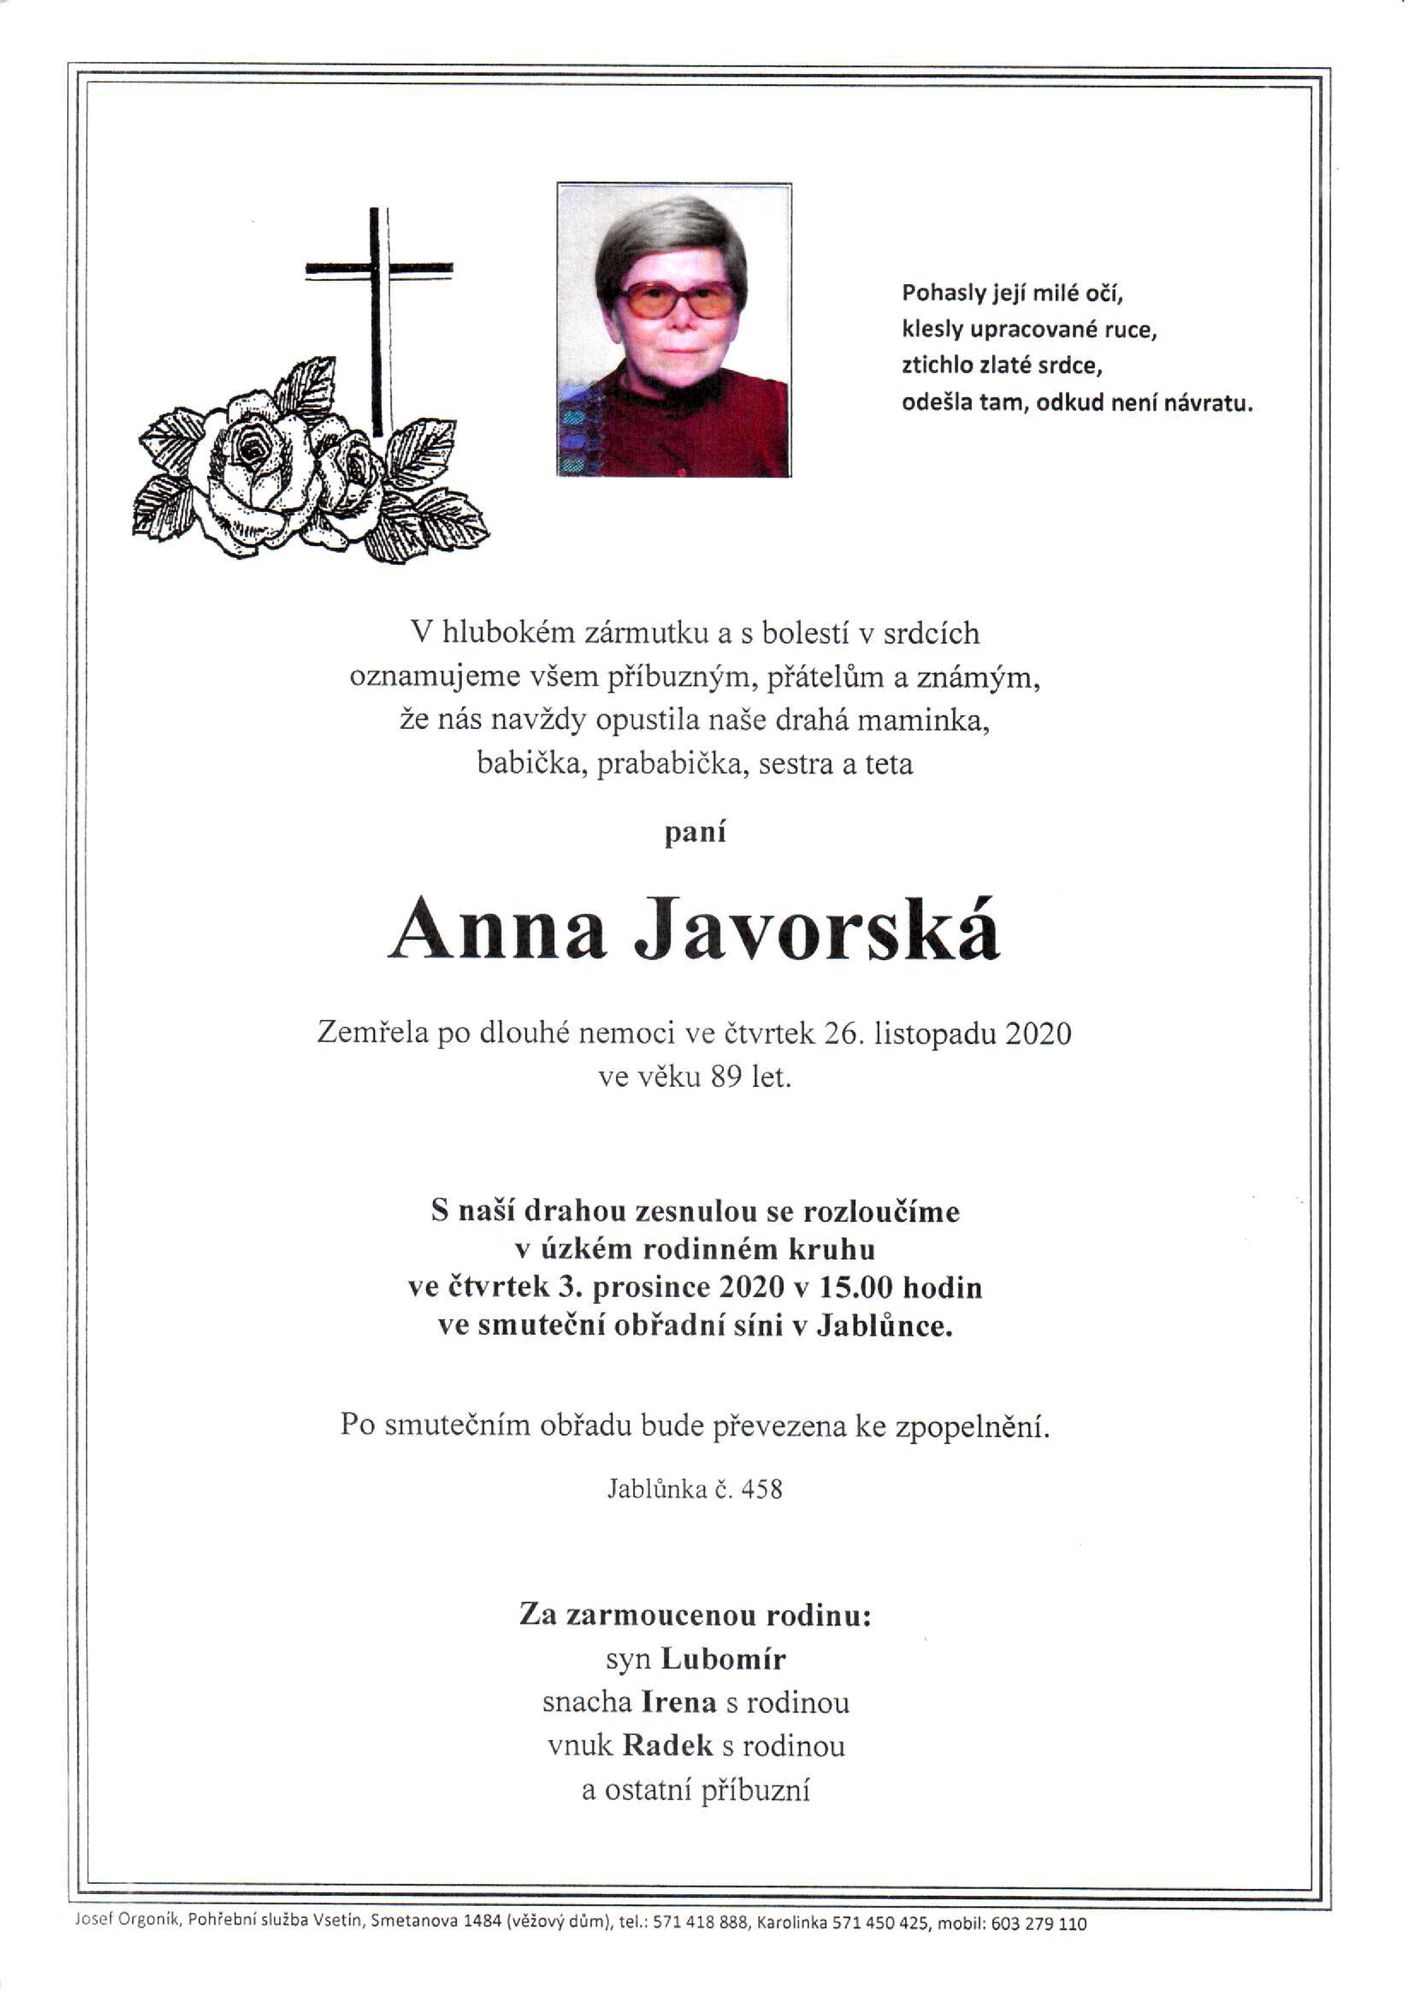 Anna Javorská